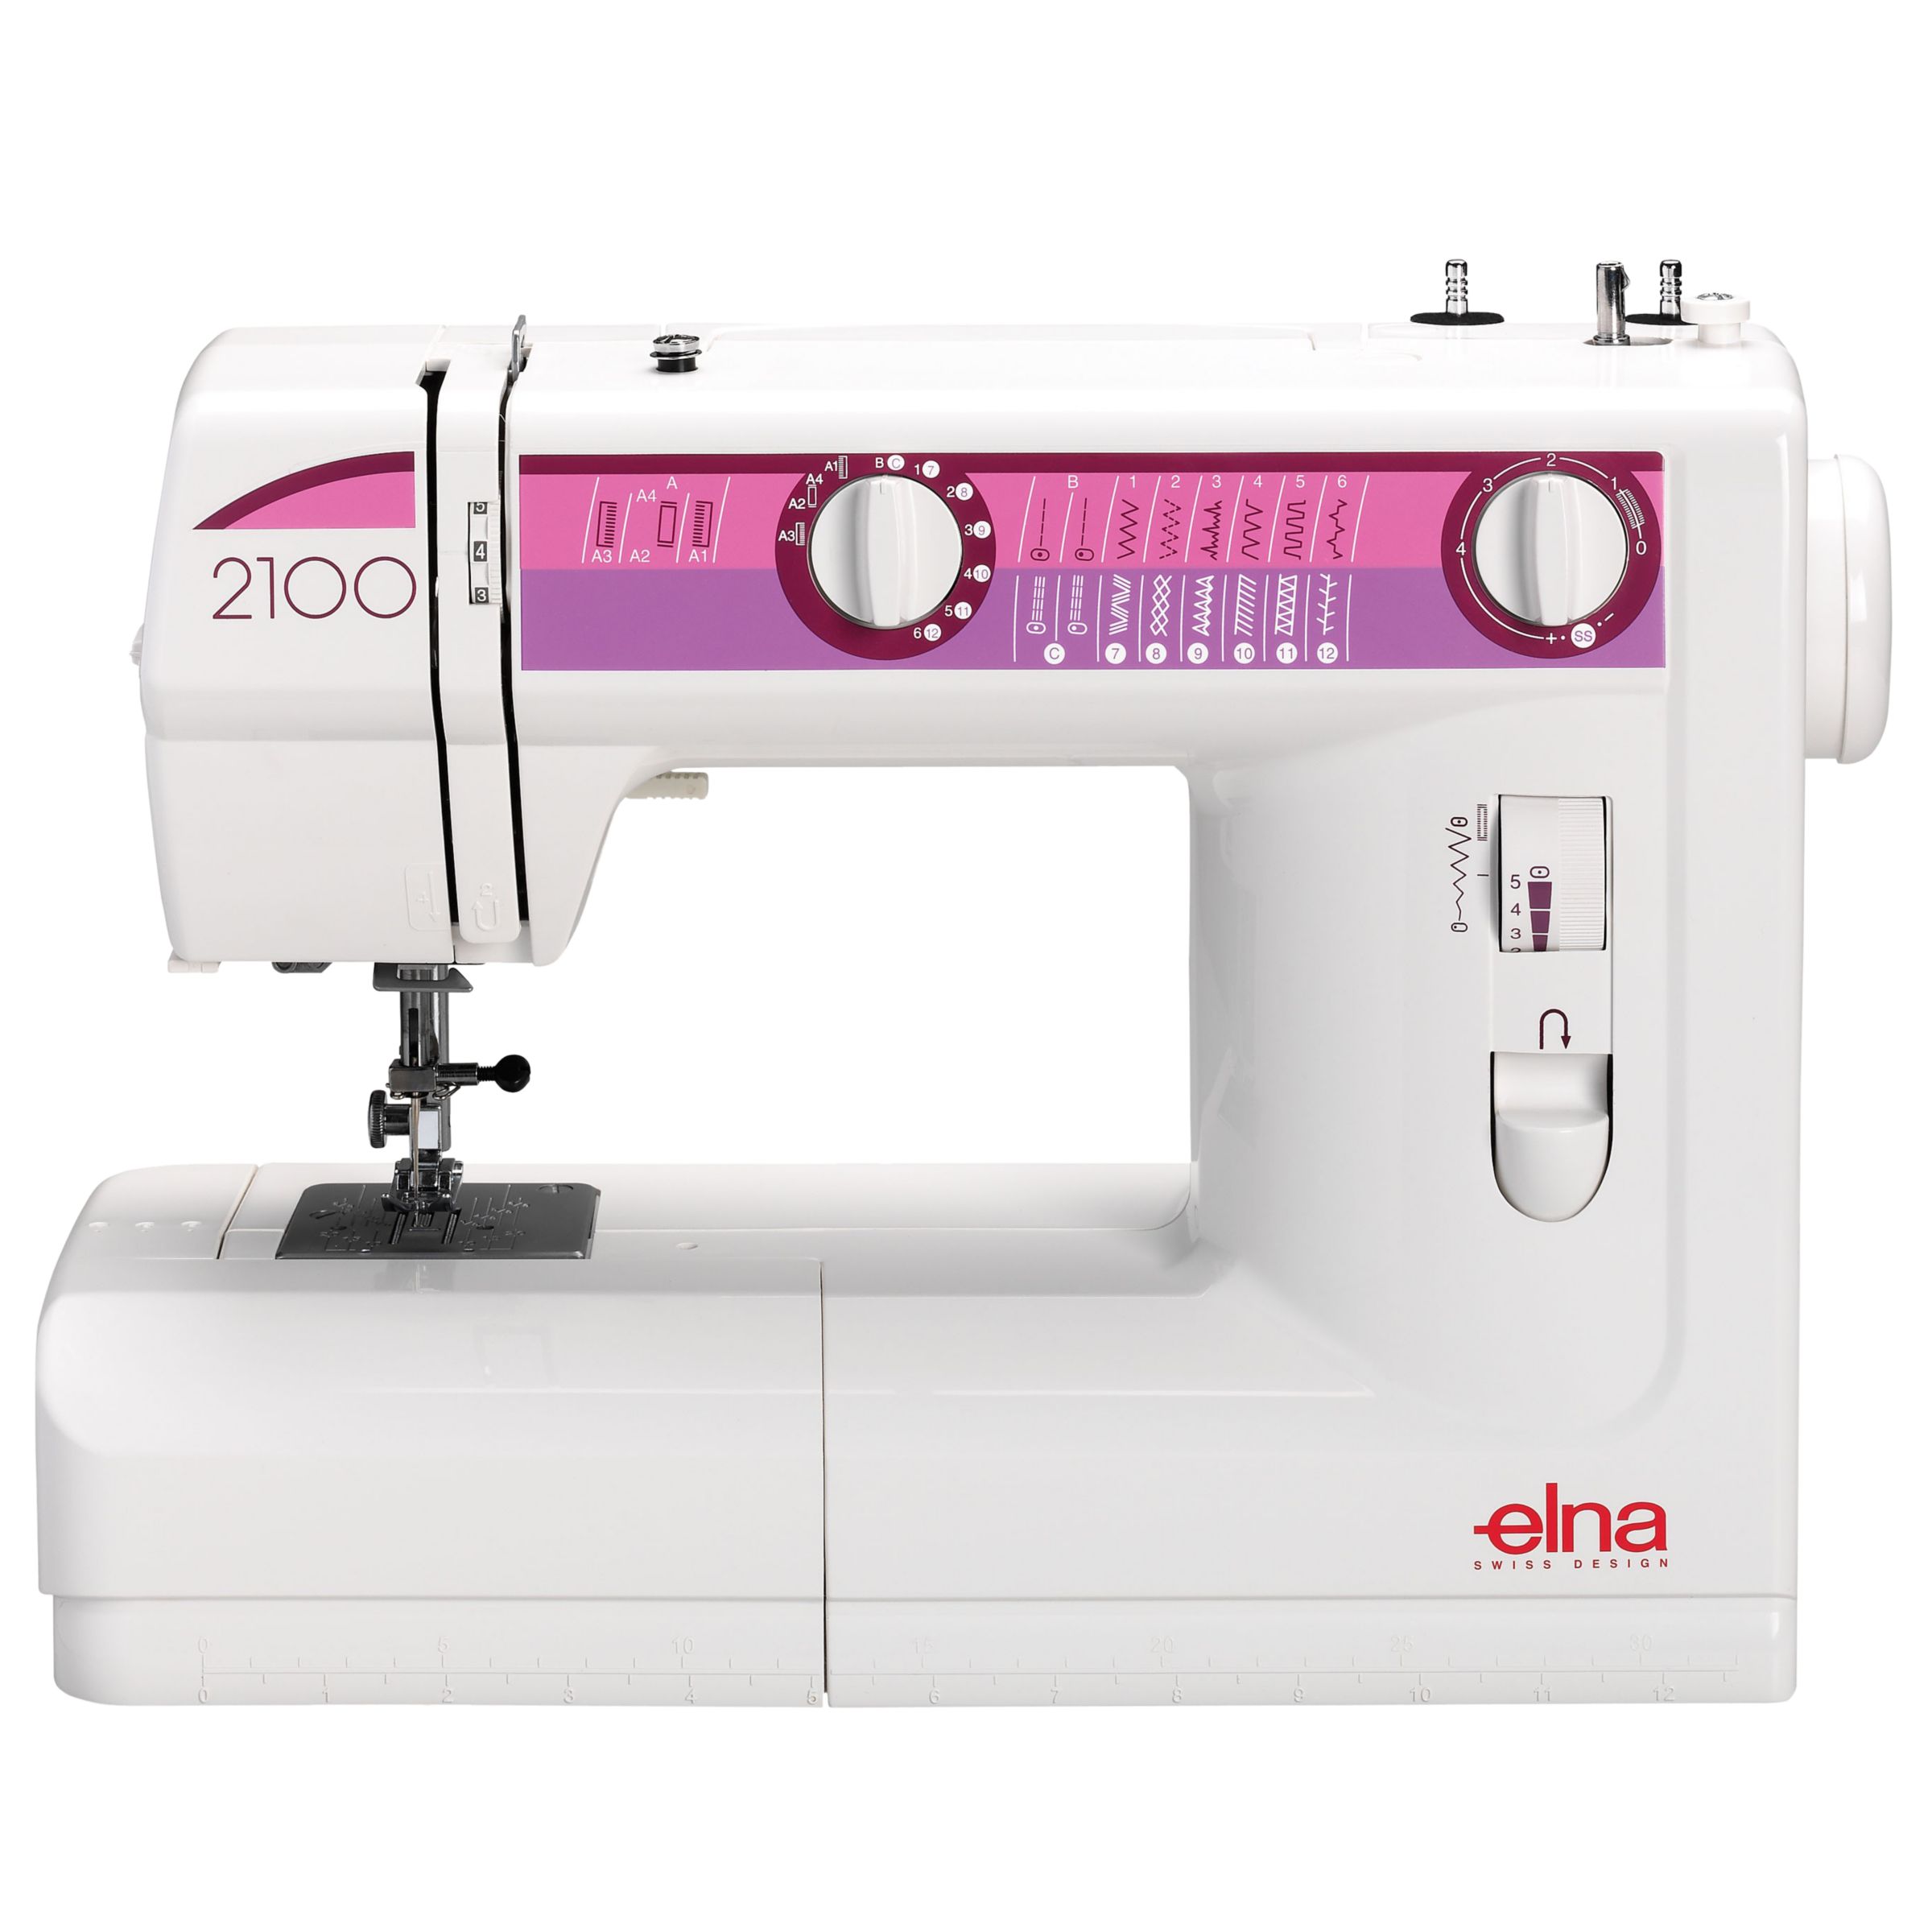 Elna 2100 Sewing Machine at John Lewis